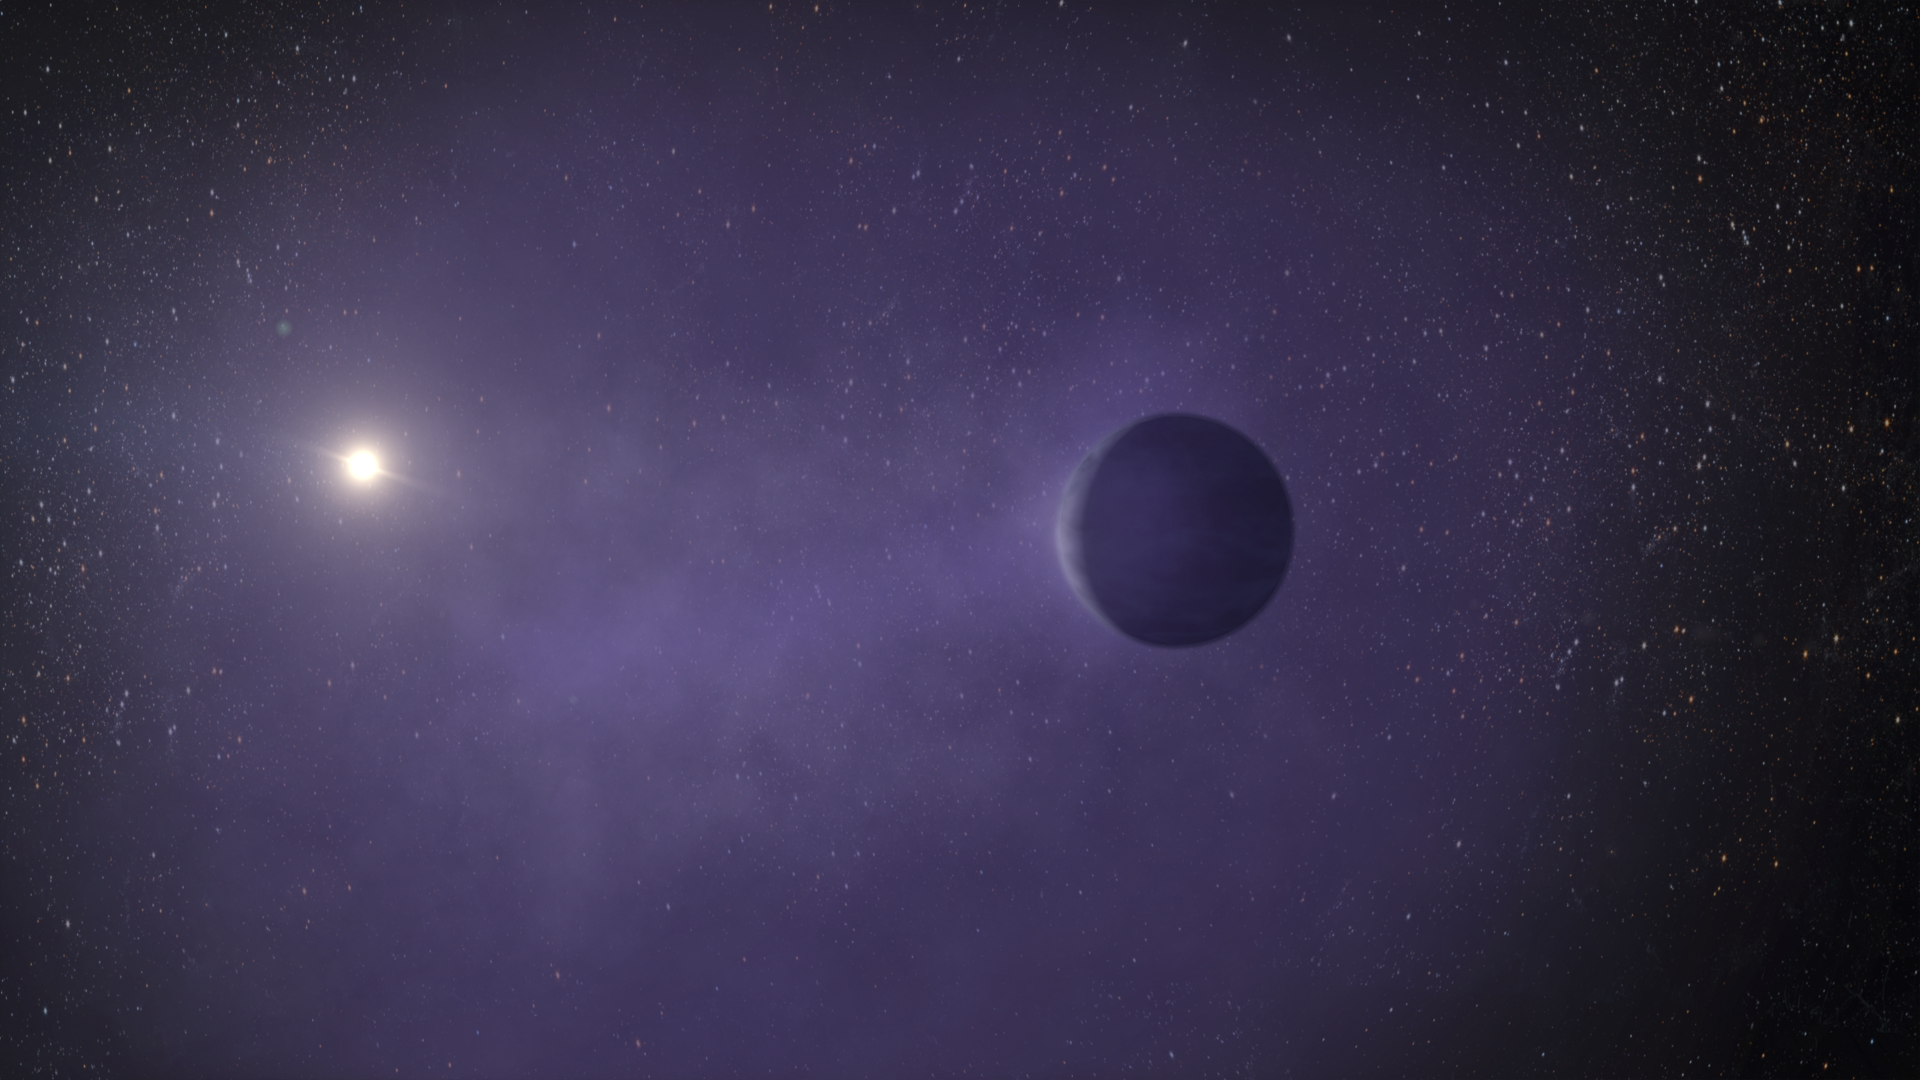 Scoperto Toi-2498 b: un super-Nettuno caldo e affascinante nell'Universo